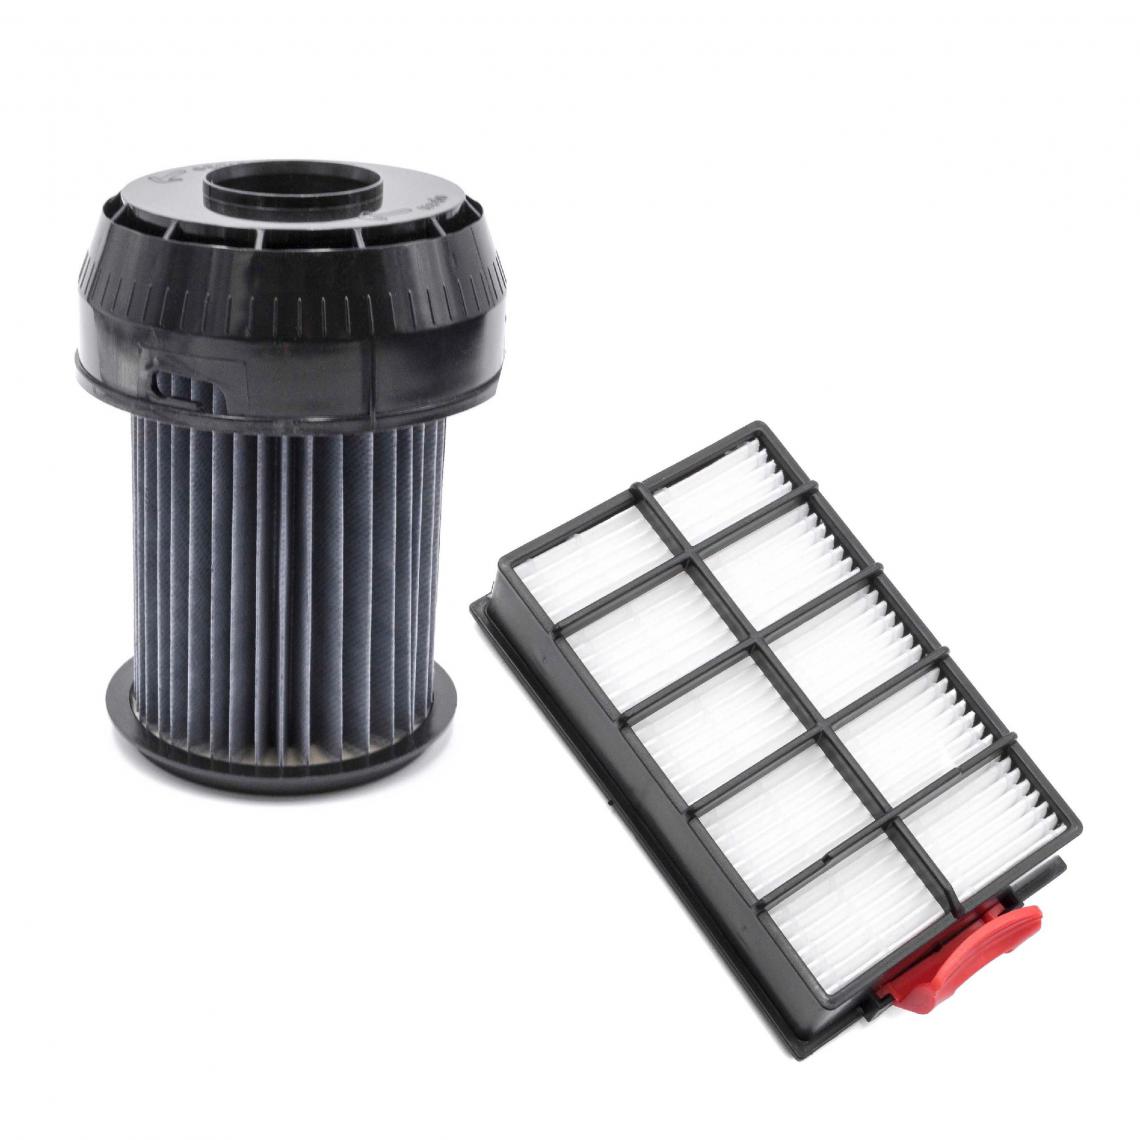 Vhbw - vhbw Lot de filtres compatible avec Bosch BGS 61842, 6220 GB/01, 62232, 6225, 6225 GB/01 aspirateur - 2x Filtres de rechange - Accessoire entretien des sols